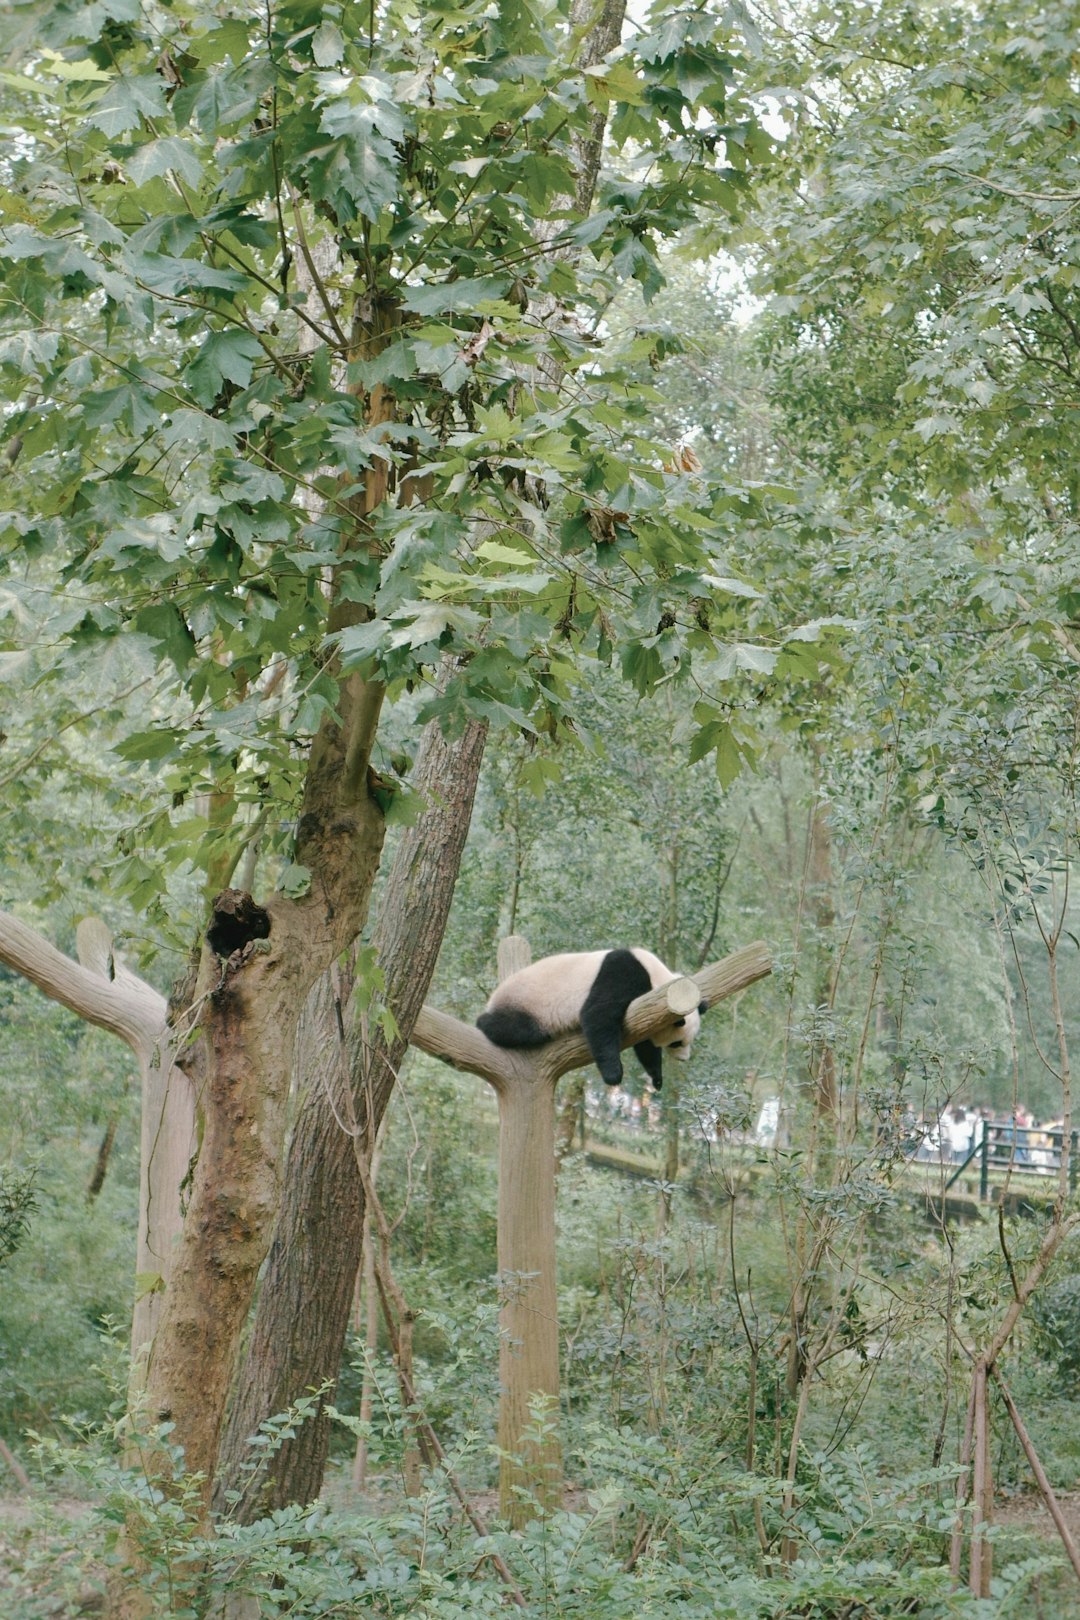 panda on tree branch during daytime